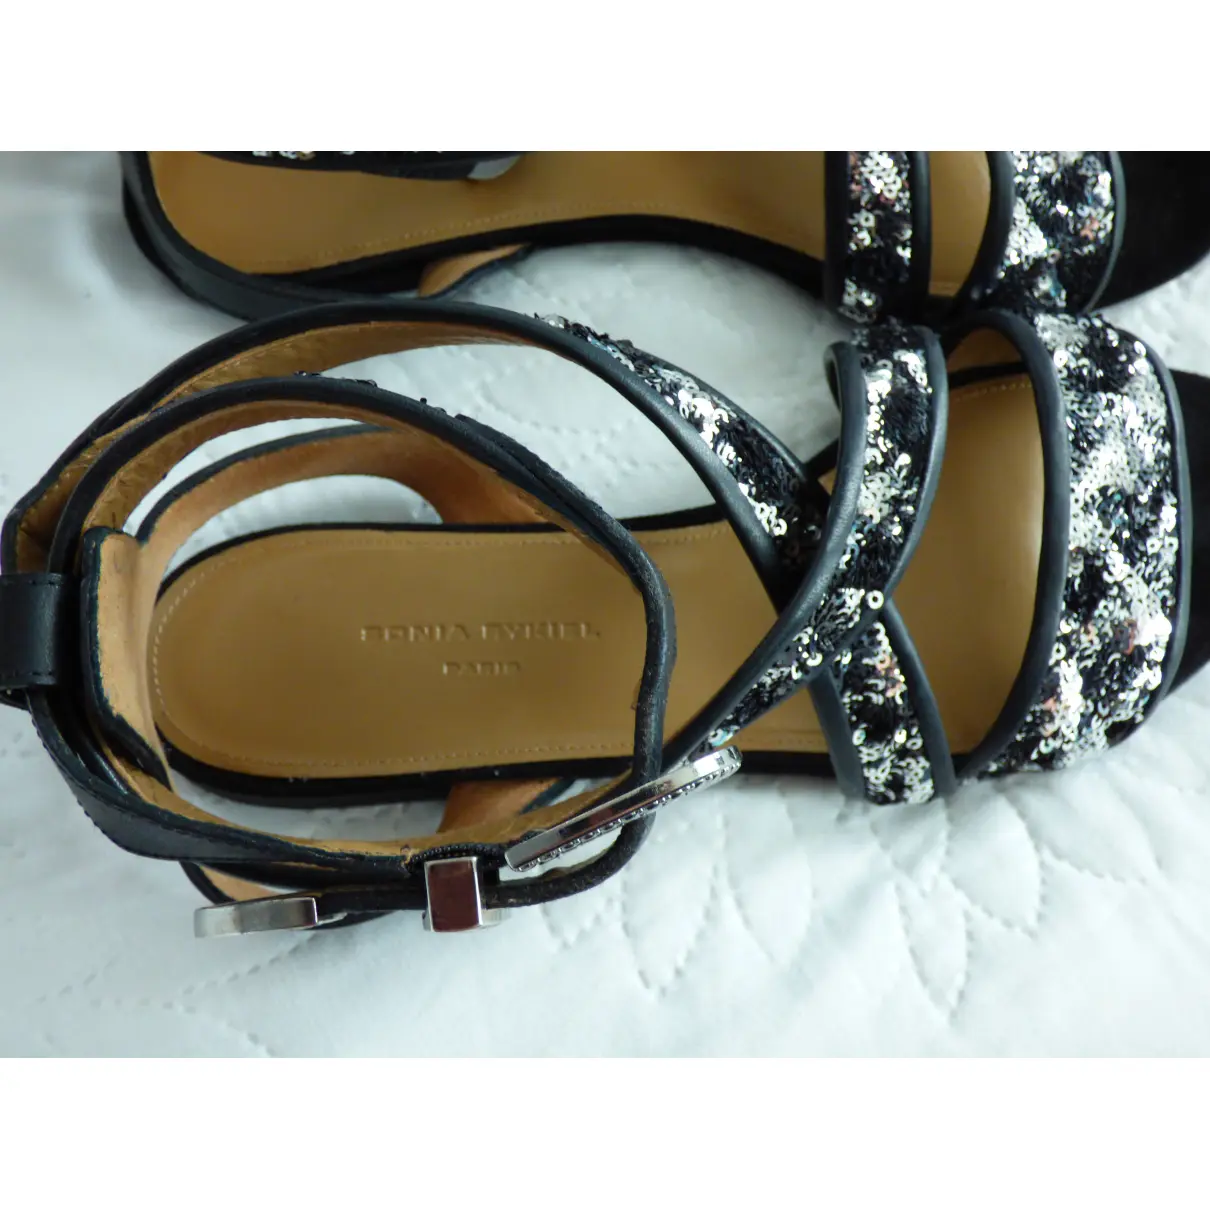 Leather sandal Sonia Rykiel - Vintage